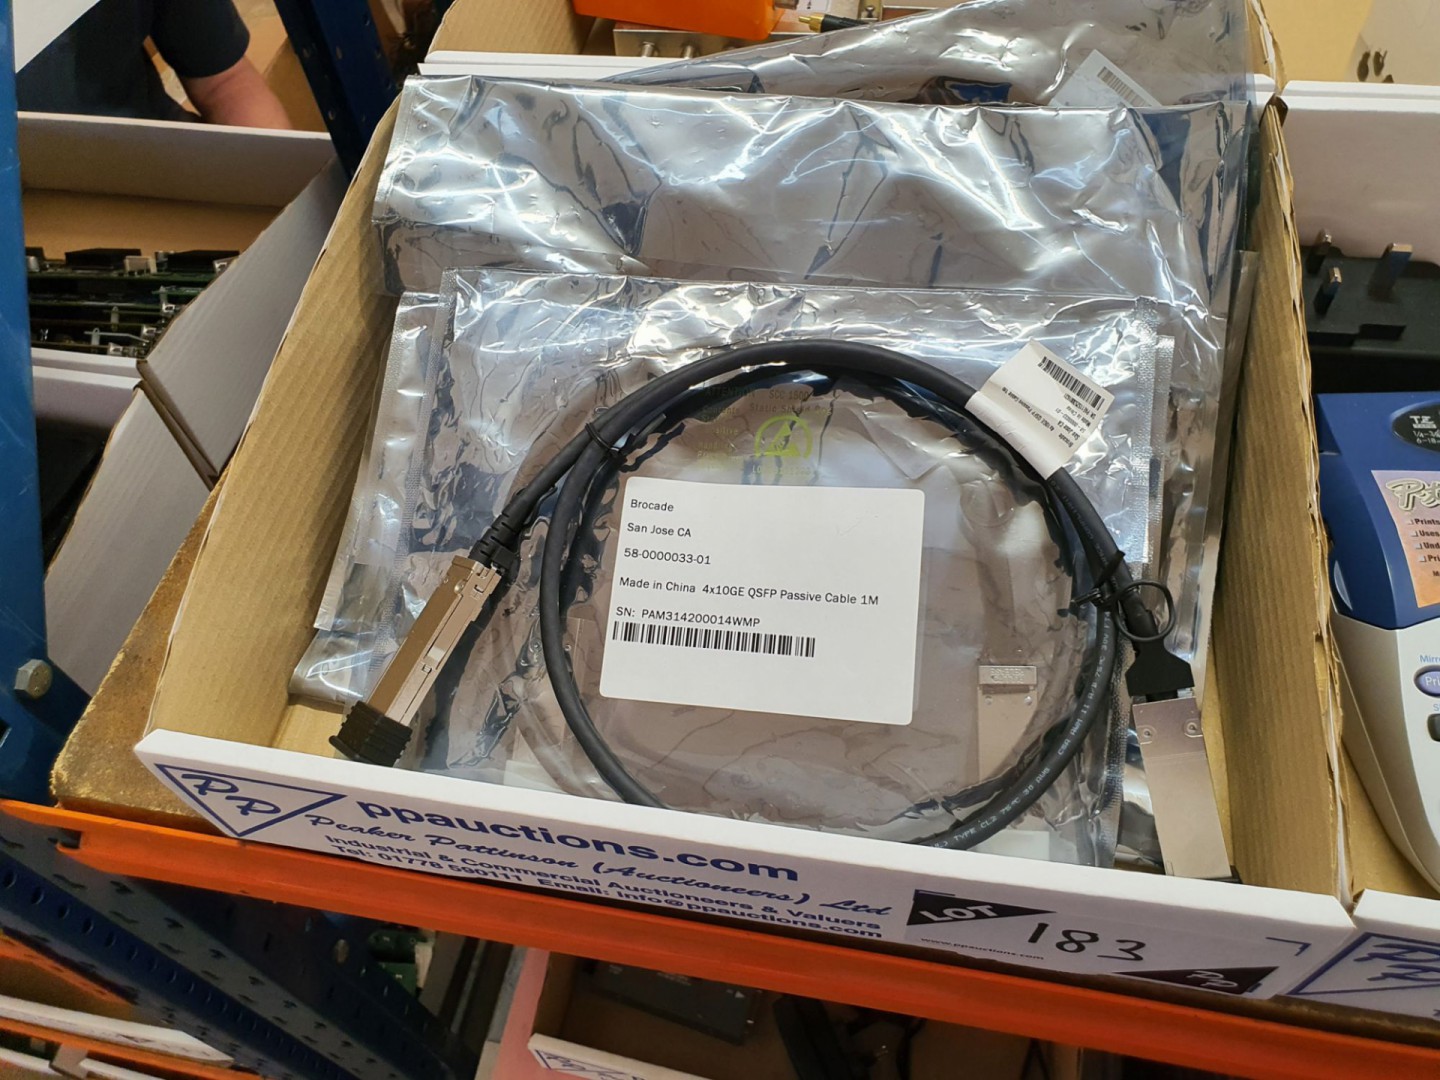 8x Brocade 4X10GE QSFP passive cables, 1m